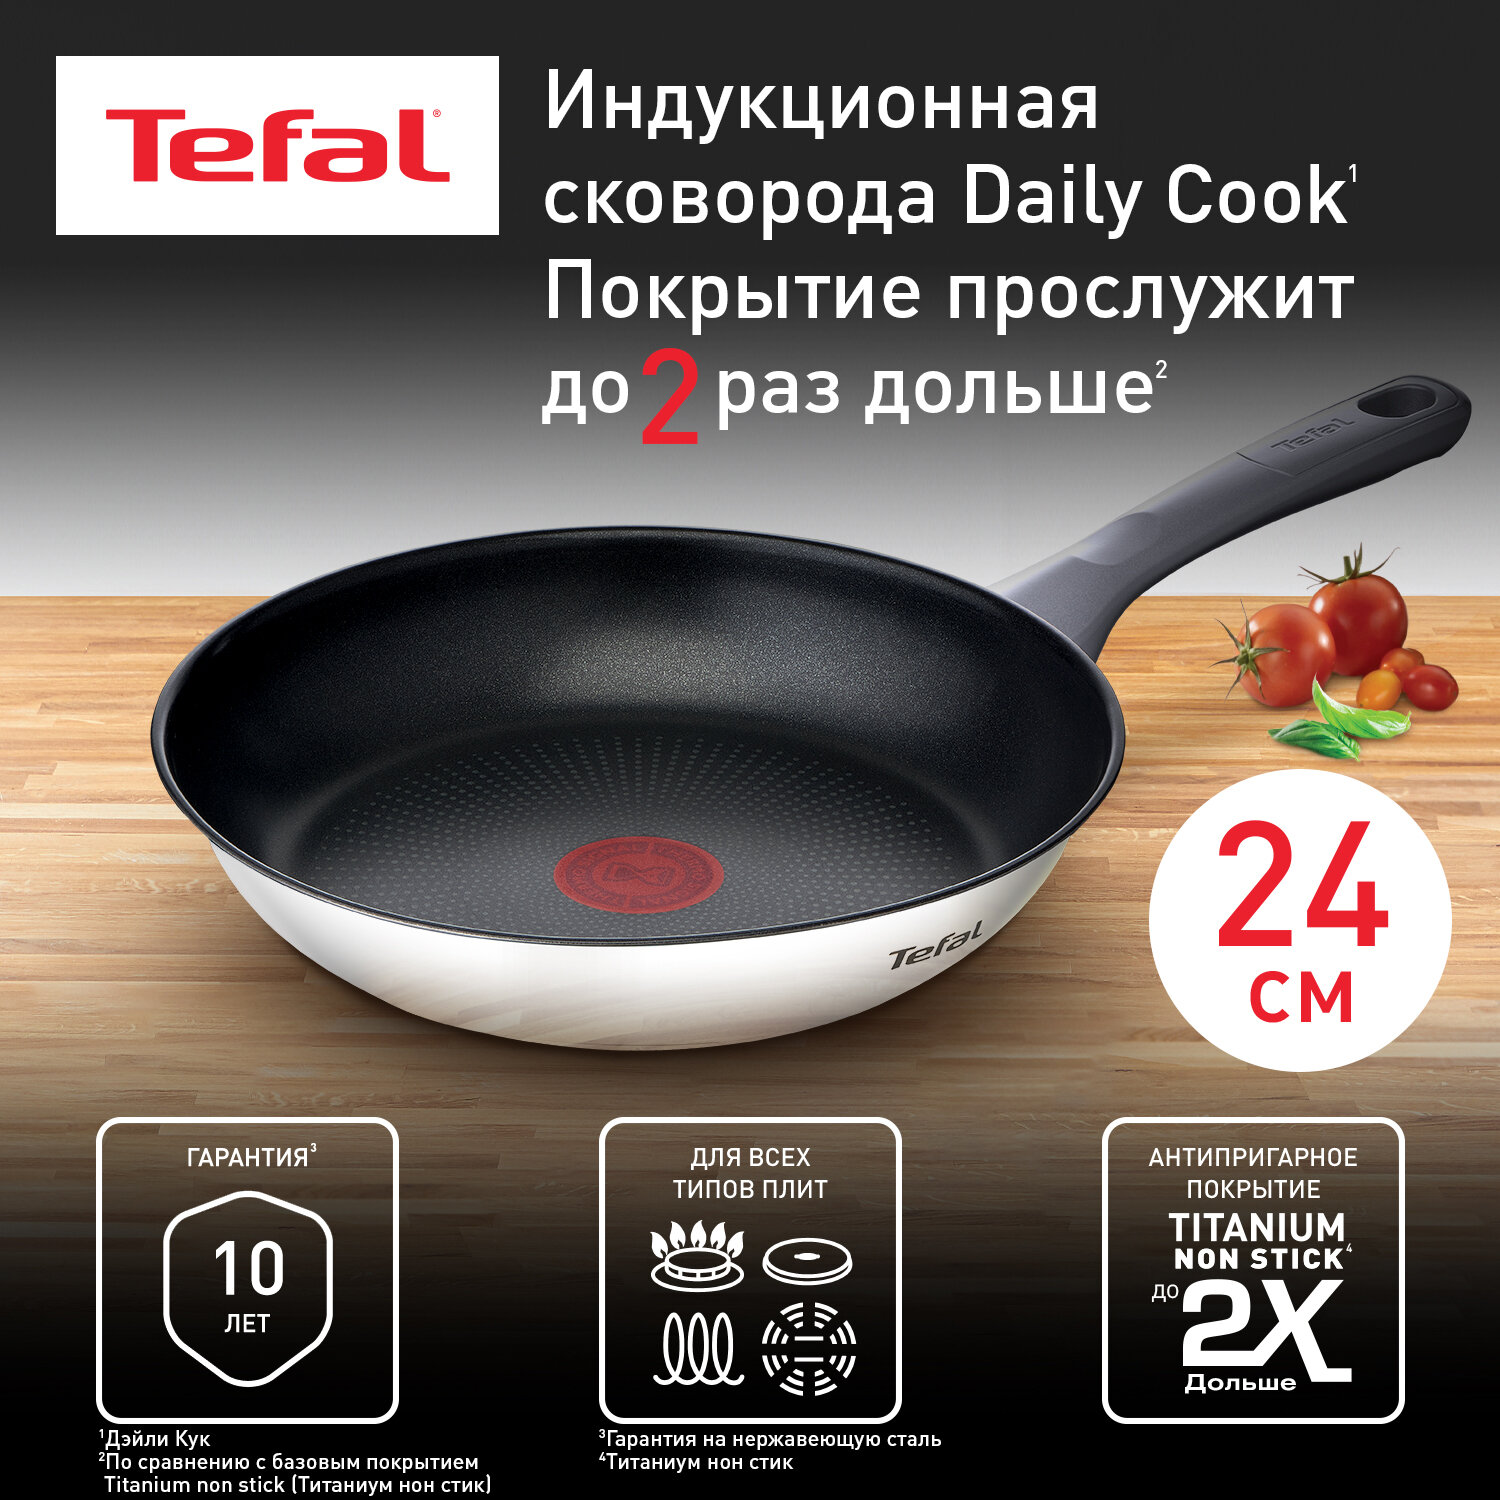 Сковорода Tefal Daily Cook G7300455 диаметр 24 см, с индикатором температуры, с антипригарным покрытием, для газовых, электрических и индукционных плит